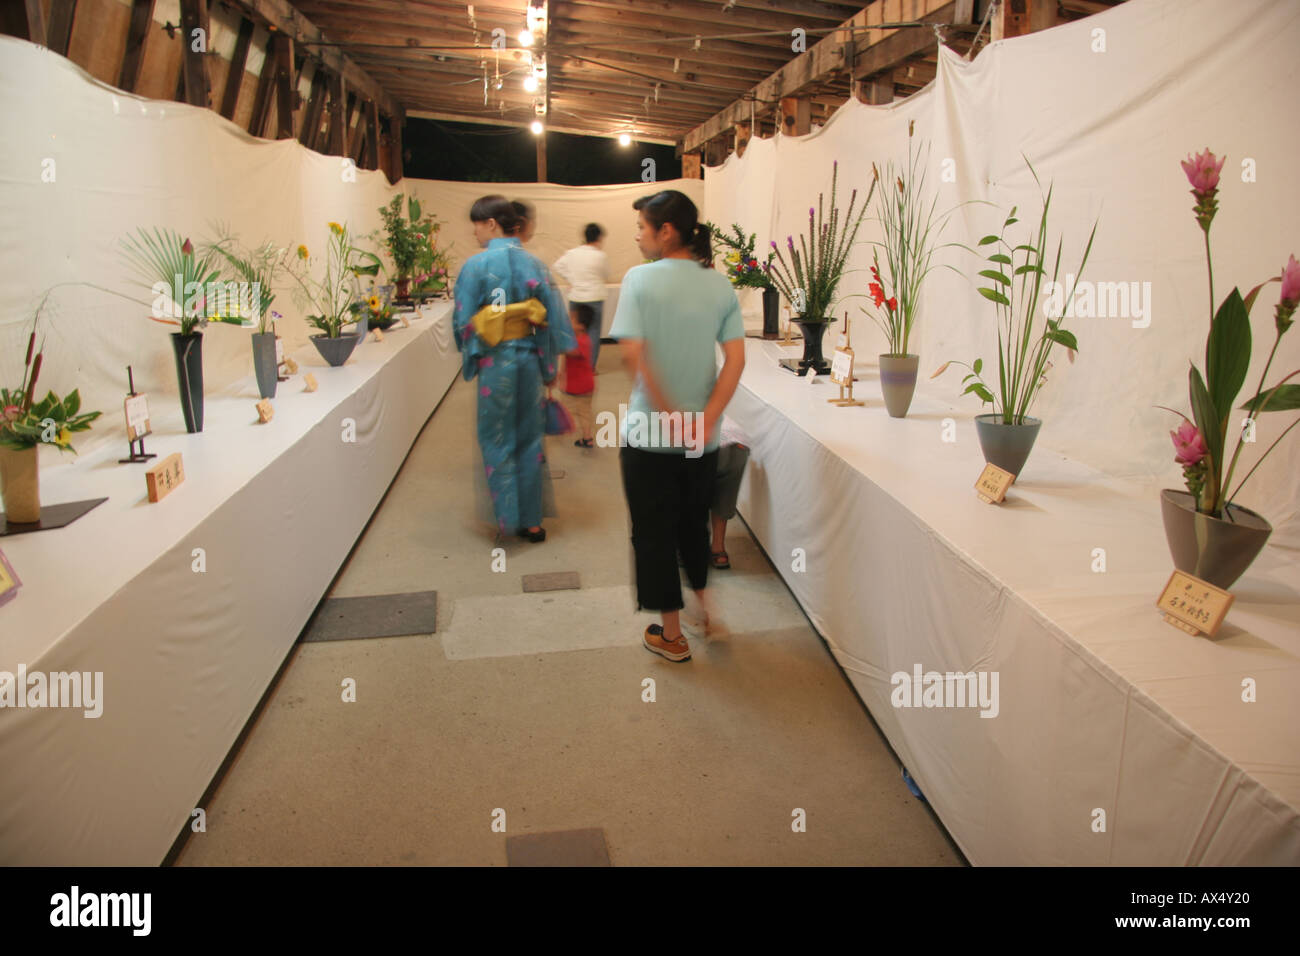 Ikabana flower arrangement exhibition in Japan Stock Photo